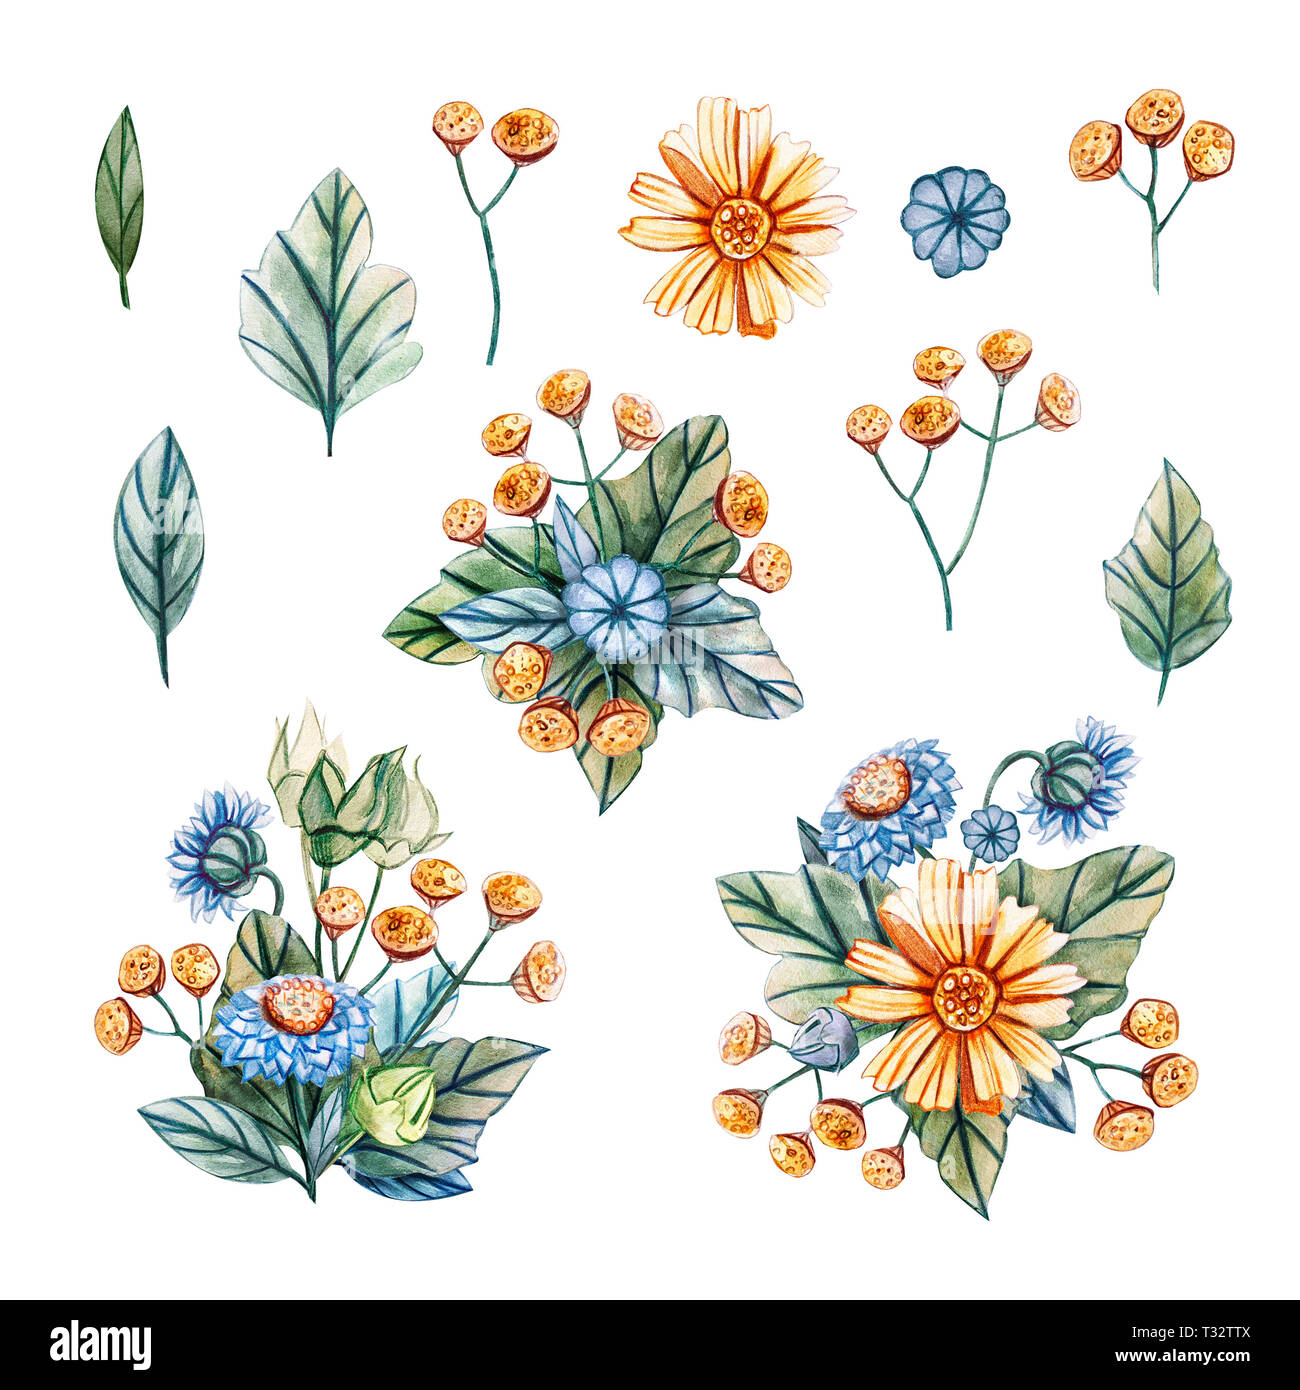 Le illustrazioni ad acquerello con mazzi di fiori selvatici per un matrimonio. Scheda floreali con foglie di colore verde, giallo camomilla, tansy giallo e blu camomilla. Foto Stock